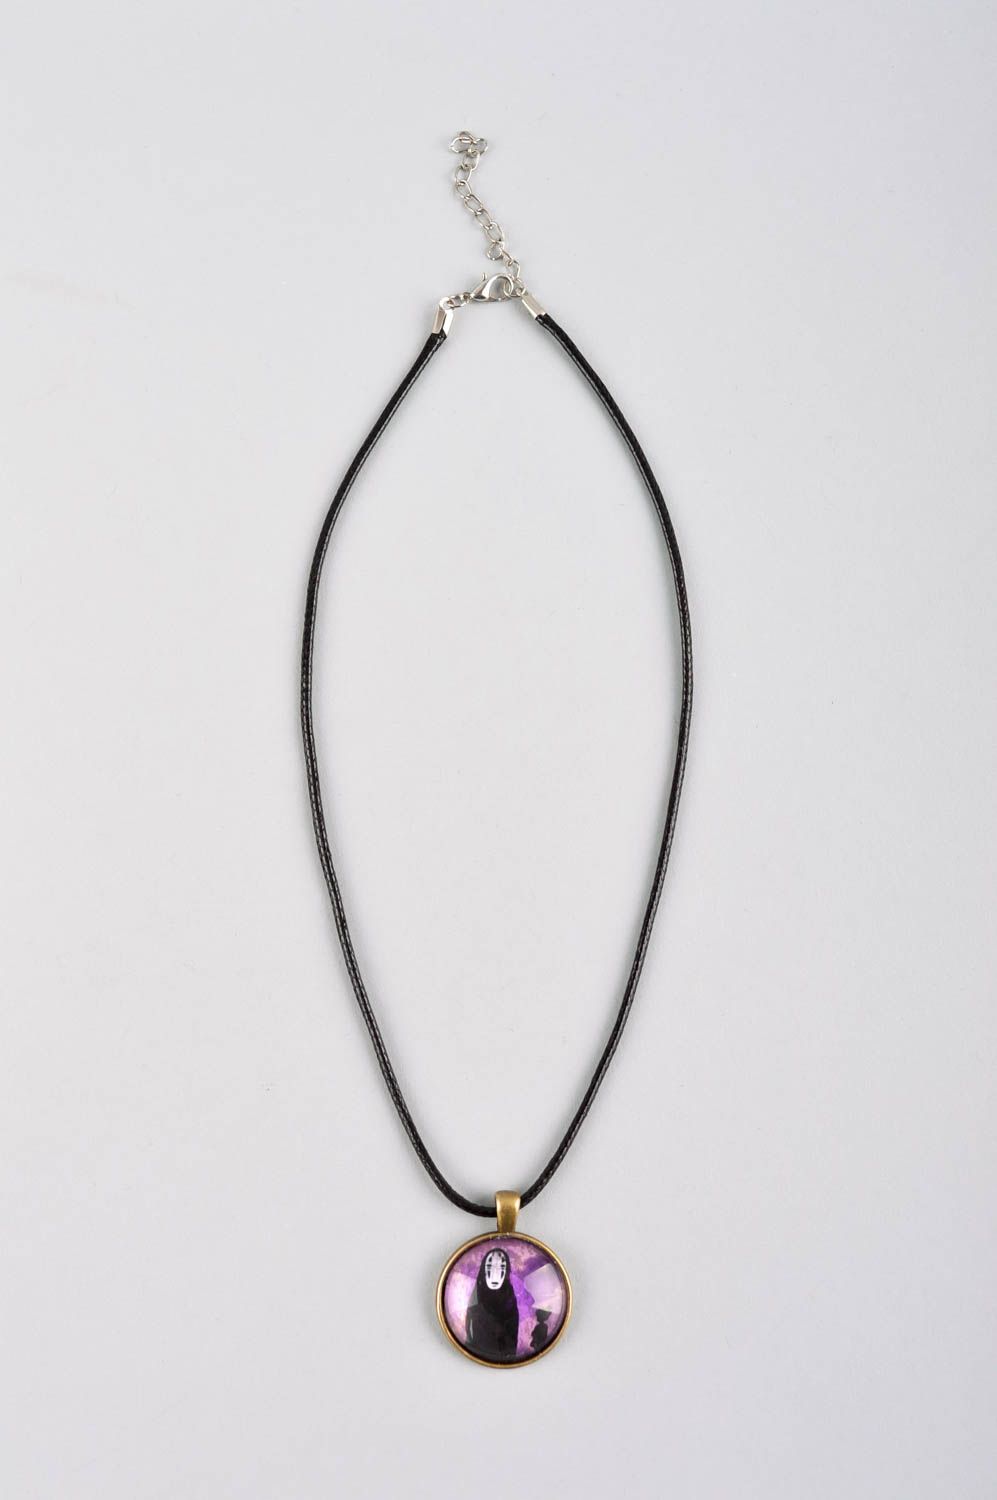 Handmade pendant on cord designer accessories for women glass pendant for girls photo 2